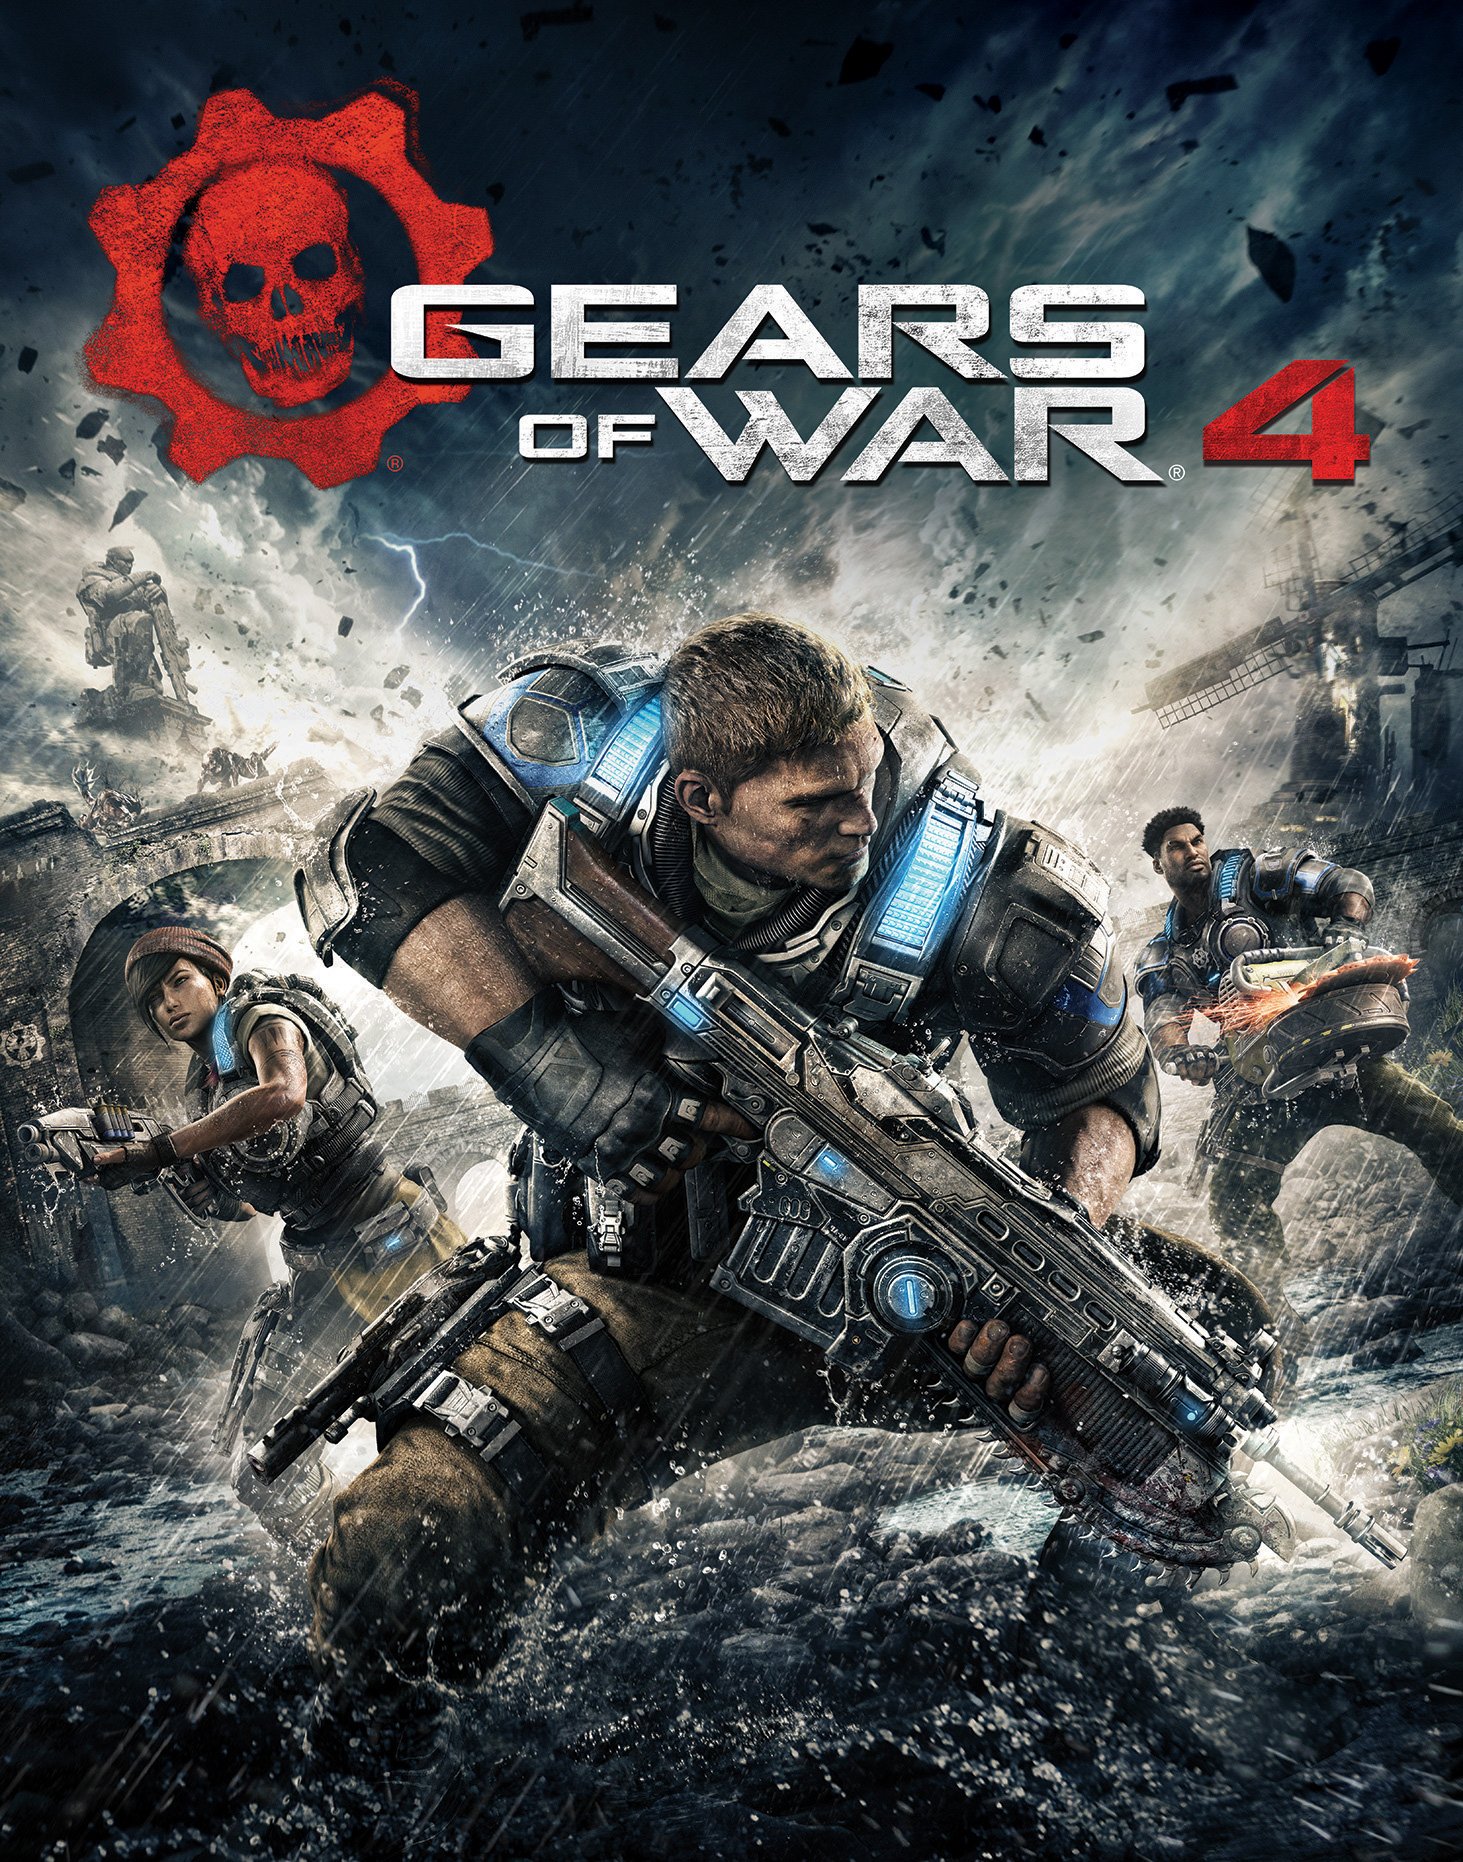 Image of Gears of War 4